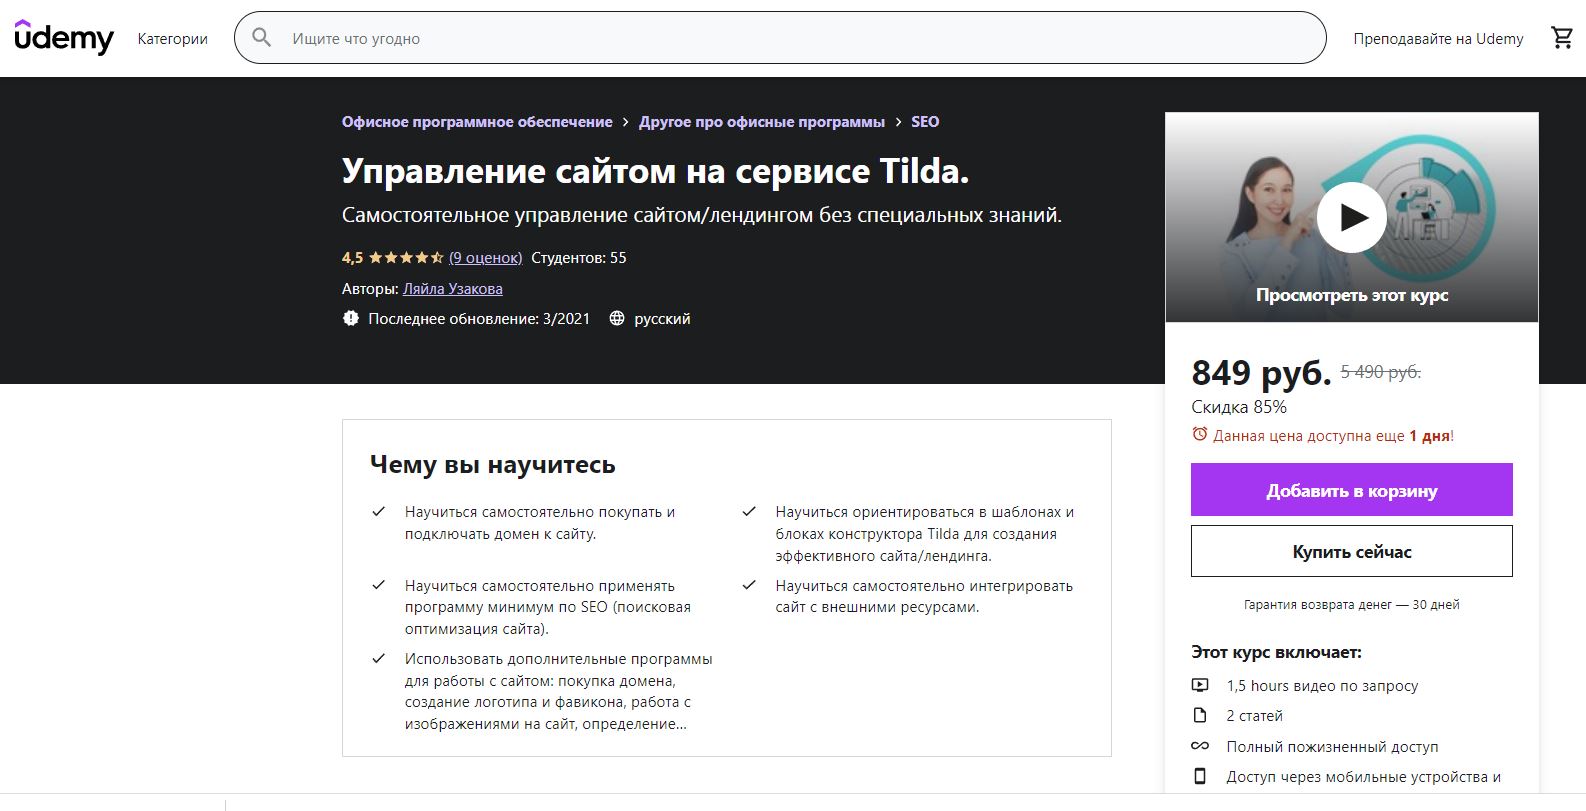 ТОП-9 лучших онлайн-курсов по созданию сайтов на Тильда - Udemy. «Управление сайтом на сервисе Tilda» - фото